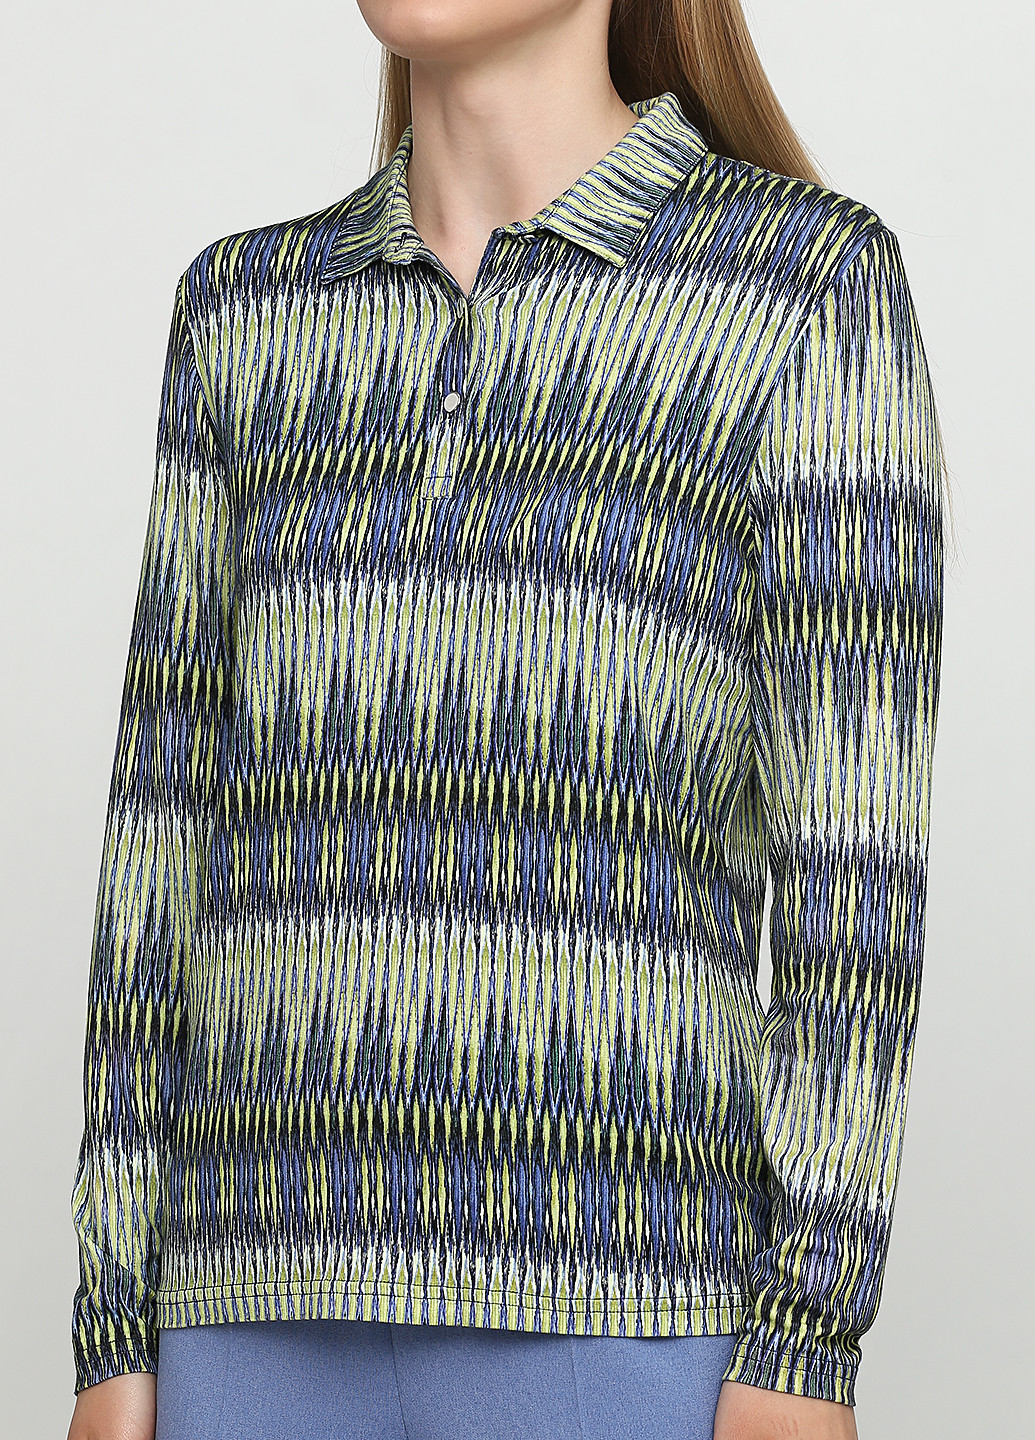 Цветная женская футболка-поло BRANDTEX CLASSIC с абстрактным узором